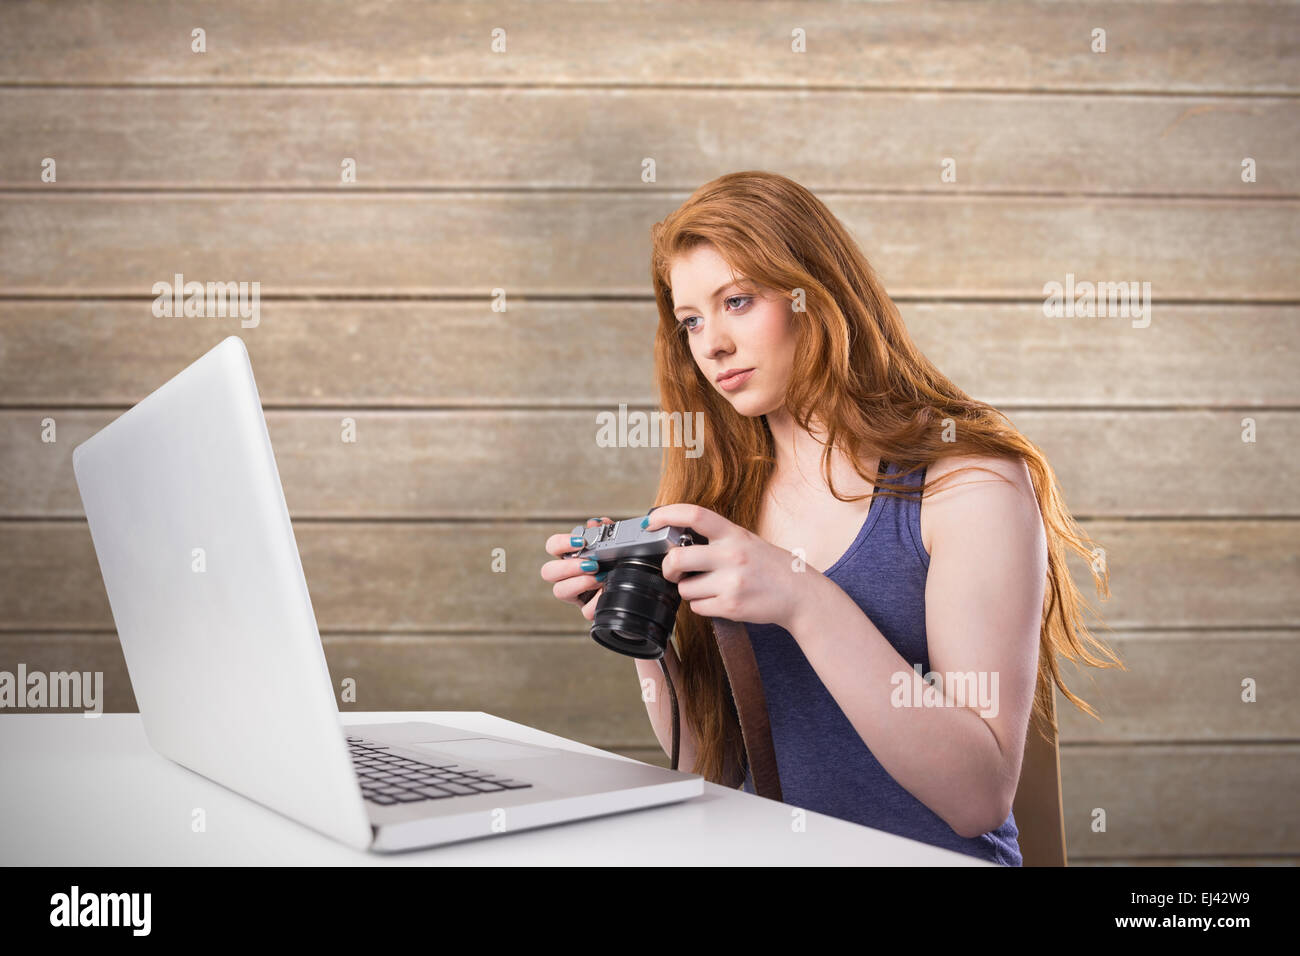 Immagine composita di pretty redhead lavorando sul computer portatile e fotocamera Foto Stock